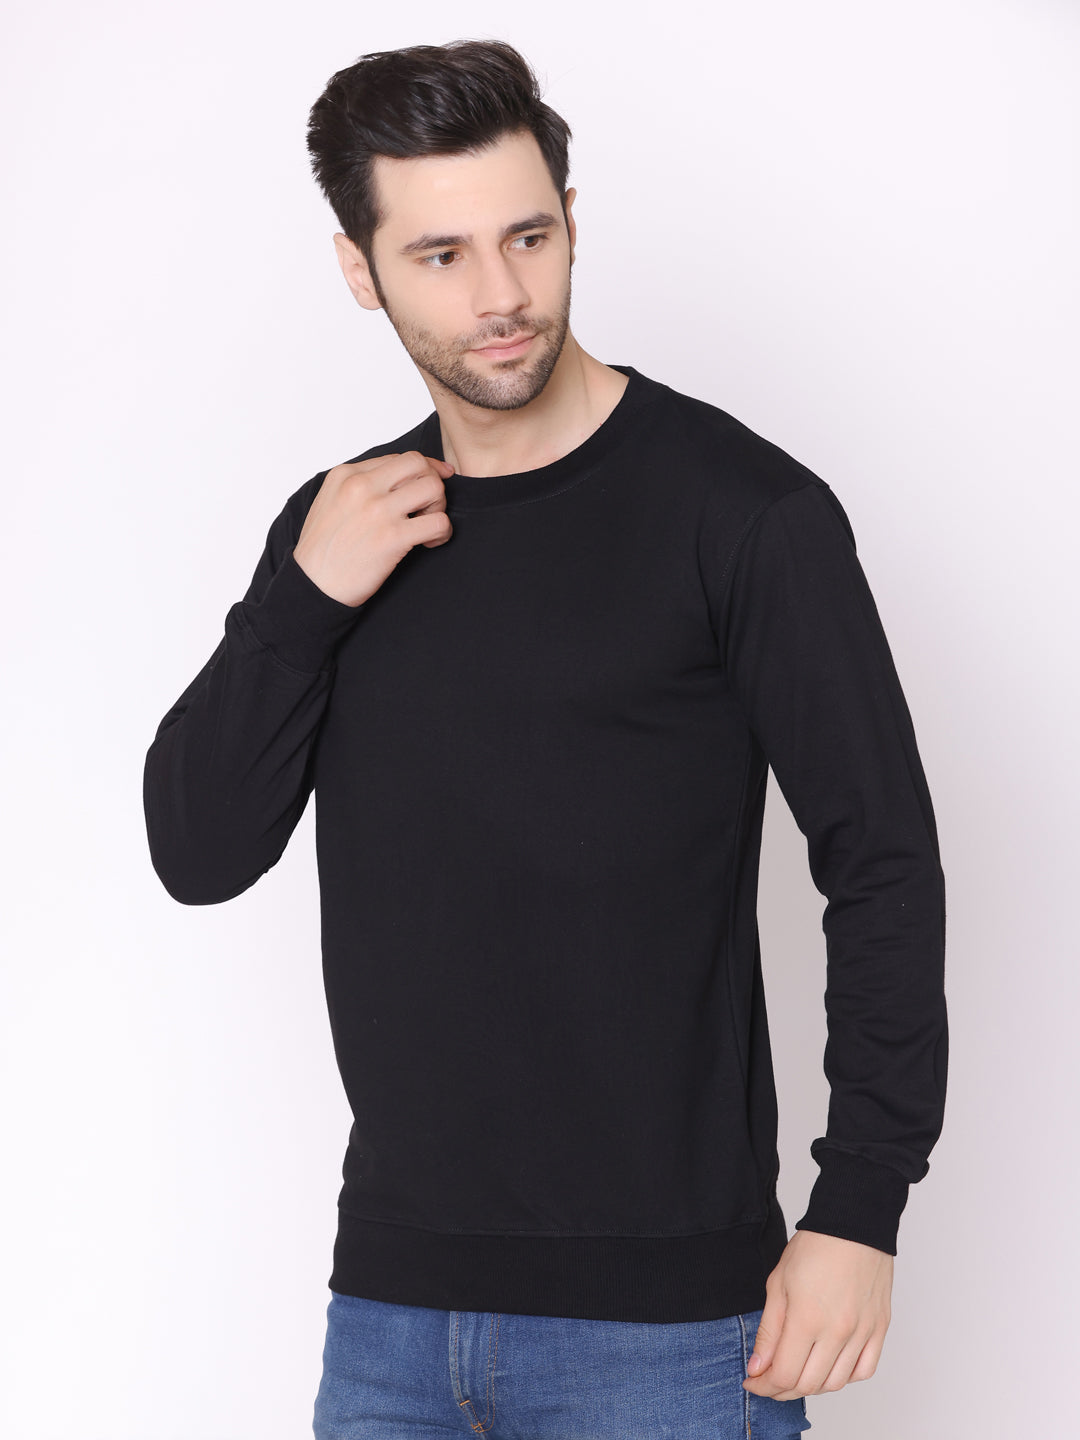 Men's Black Solid Cotton Fleece Sweatshirt